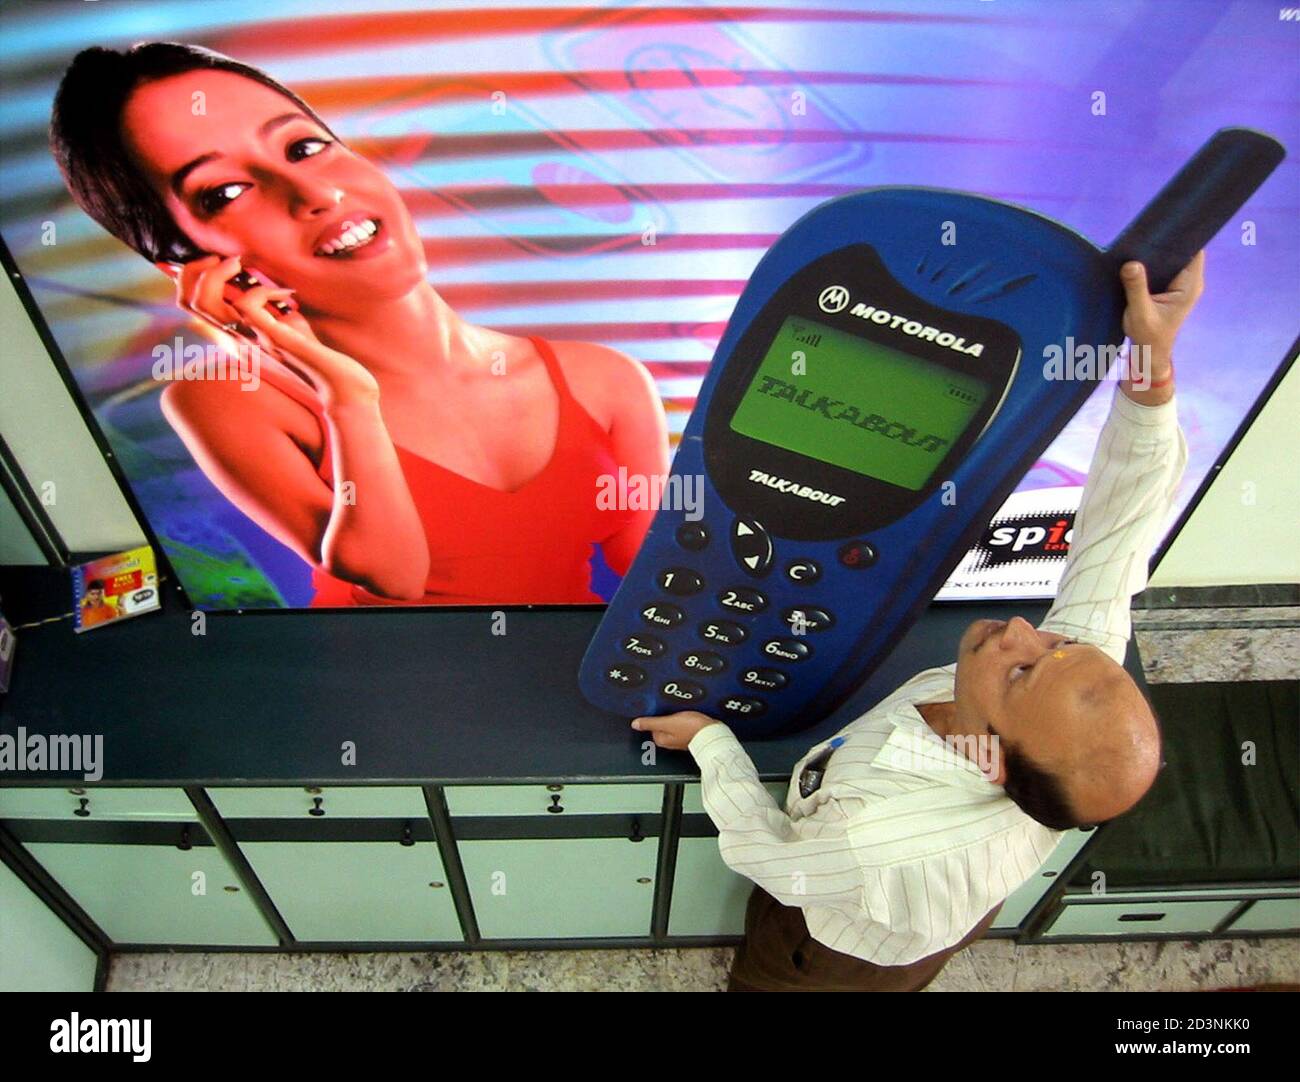 Un trabajador indio adjunta un modelo de teléfono móvil a una cartelera  publicitaria en la ciudad India oriental de Calcuta el 19 de diciembre de  2001. La Asociación de operadores celulares de